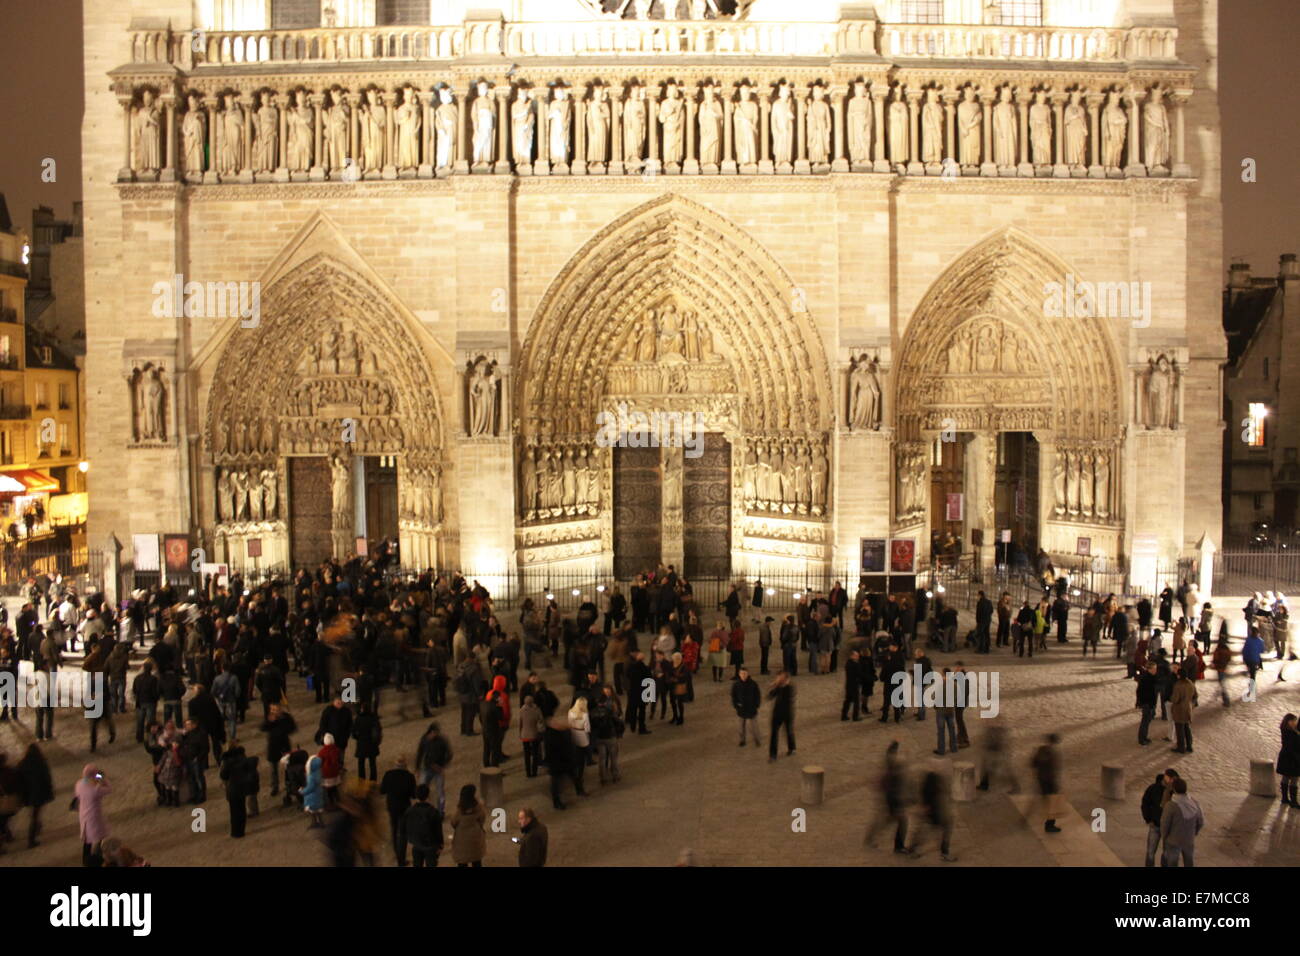 Façade de la Cathédrale Notre Dame de Paris, cathédrale, Paris,France. Banque D'Images